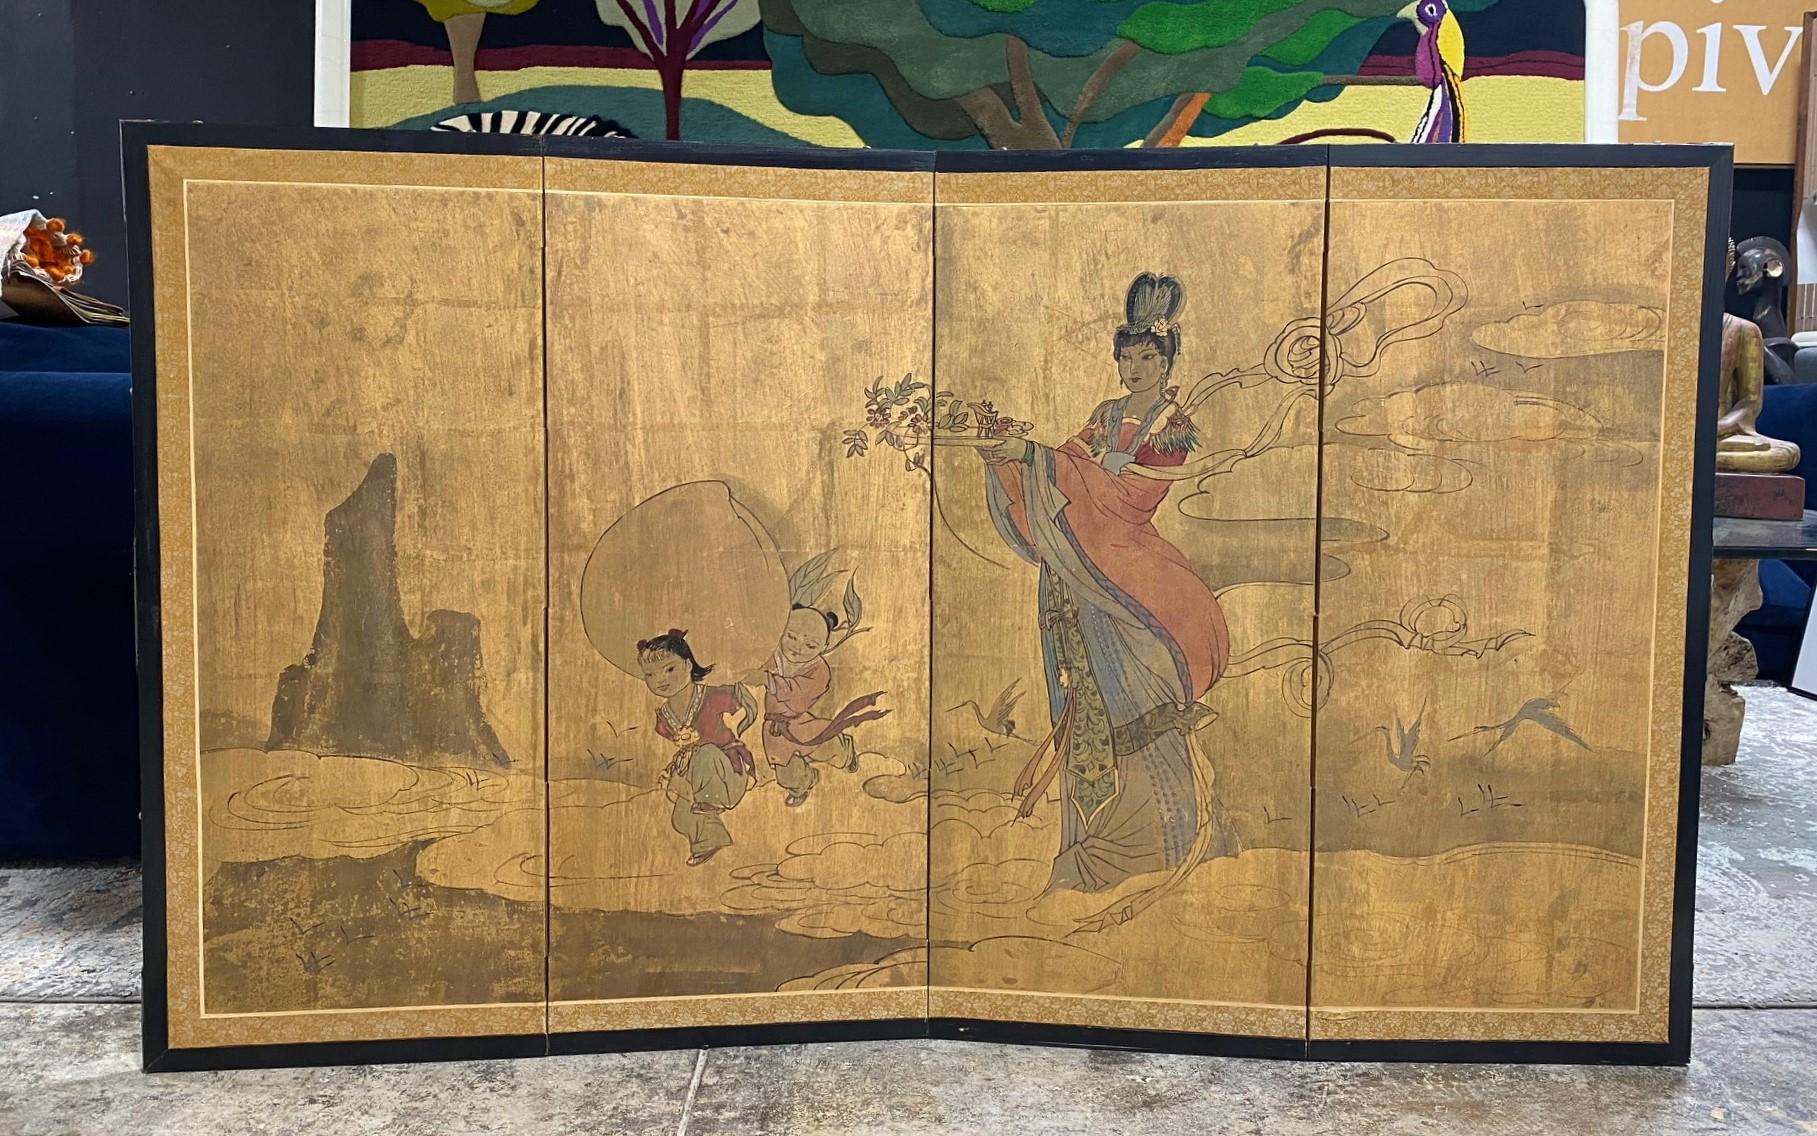 Ein wunderschöner handgemalter vierteiliger Byobu-Faltwandschirm im japanischen Stil, der eine Landschaftsszene mit einer Mutter zeigt, die offenbar auf dem Weg zu einem Fest oder einer Zeremonie ist und ein Tablett mit Blumen und vielleicht Tee